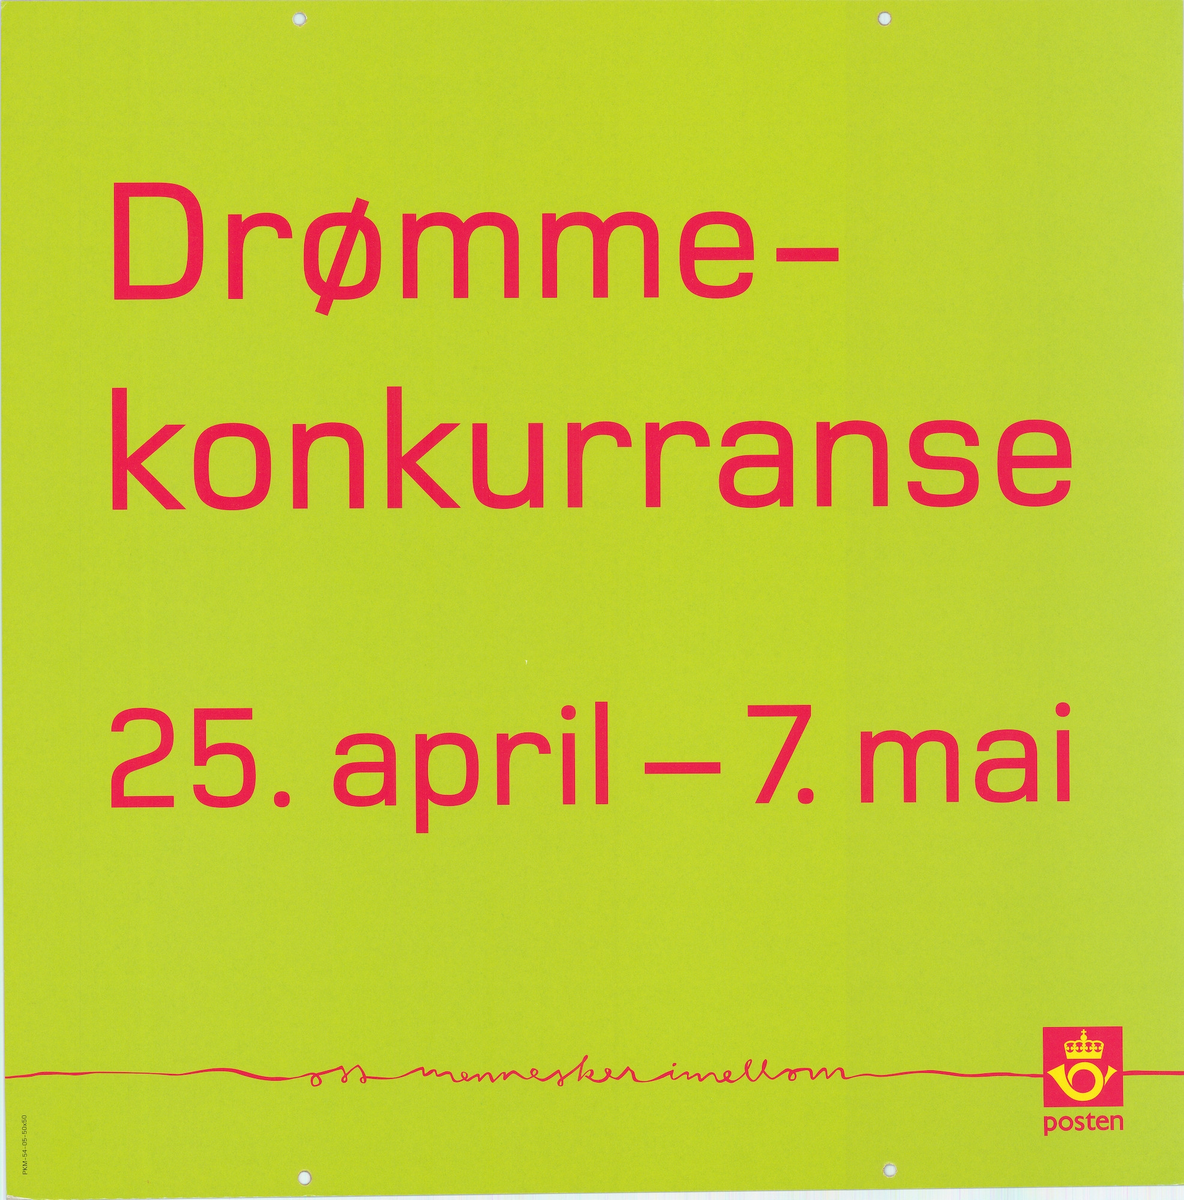 Tosidig plakat med tekst på grønn og rød bakgrunn. "Drømmekonkurranse..." Postlogo.